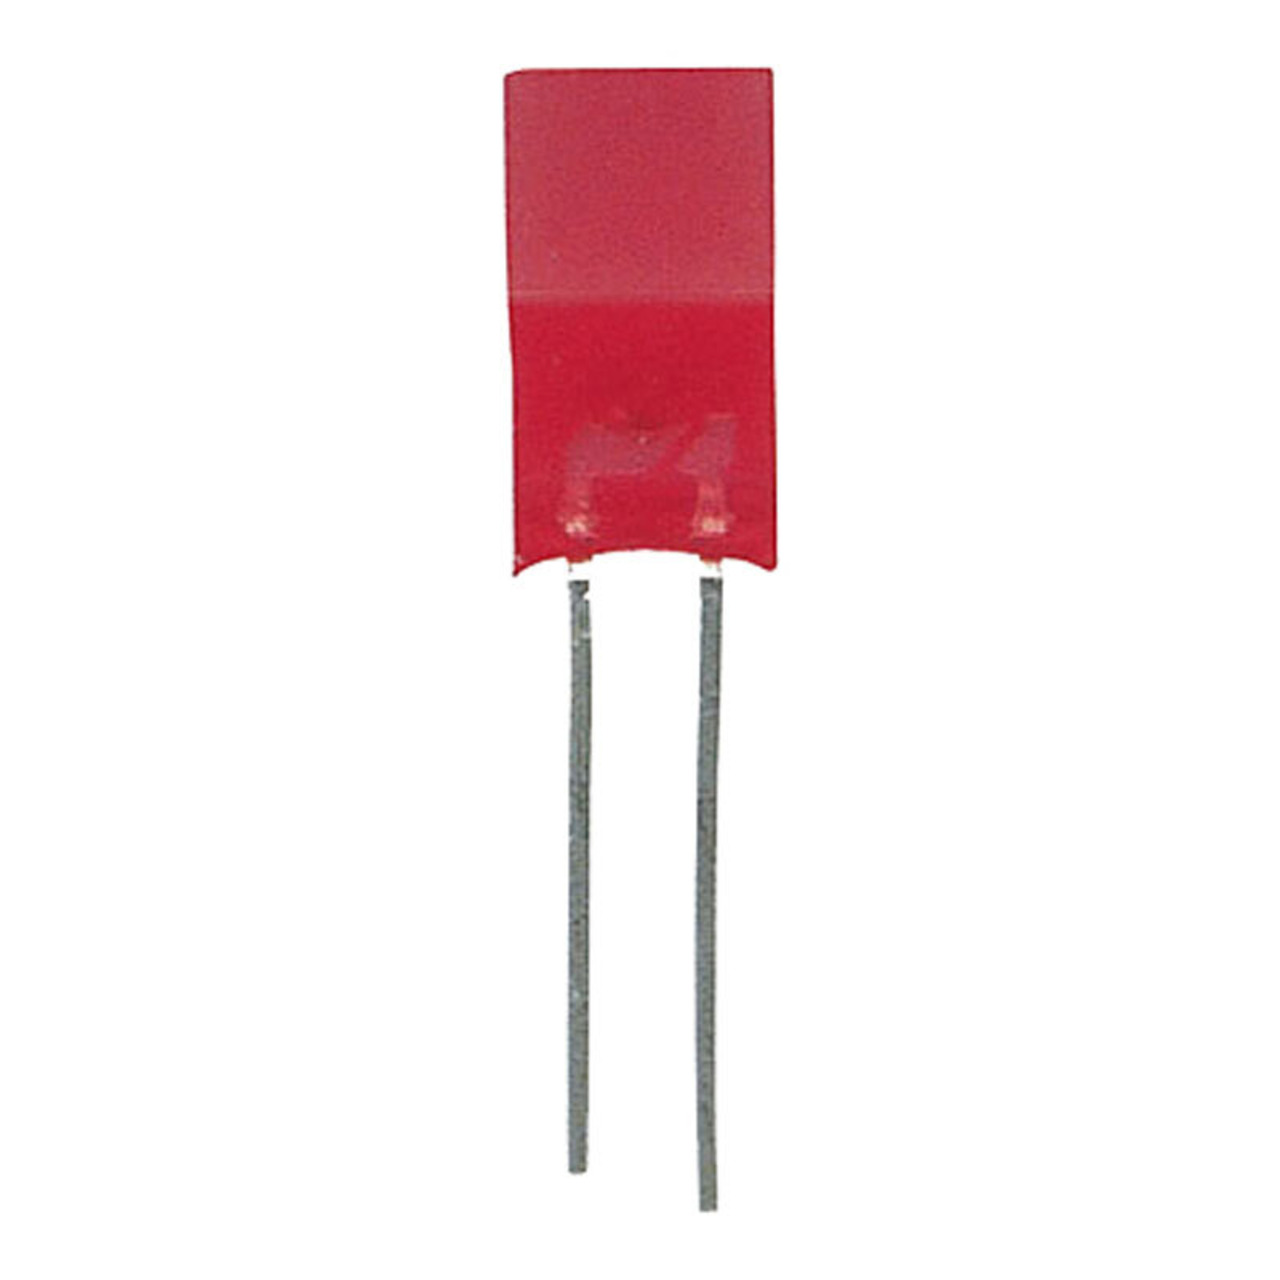 LED Quadratisch 5 x 5 mm Rot unter Komponenten